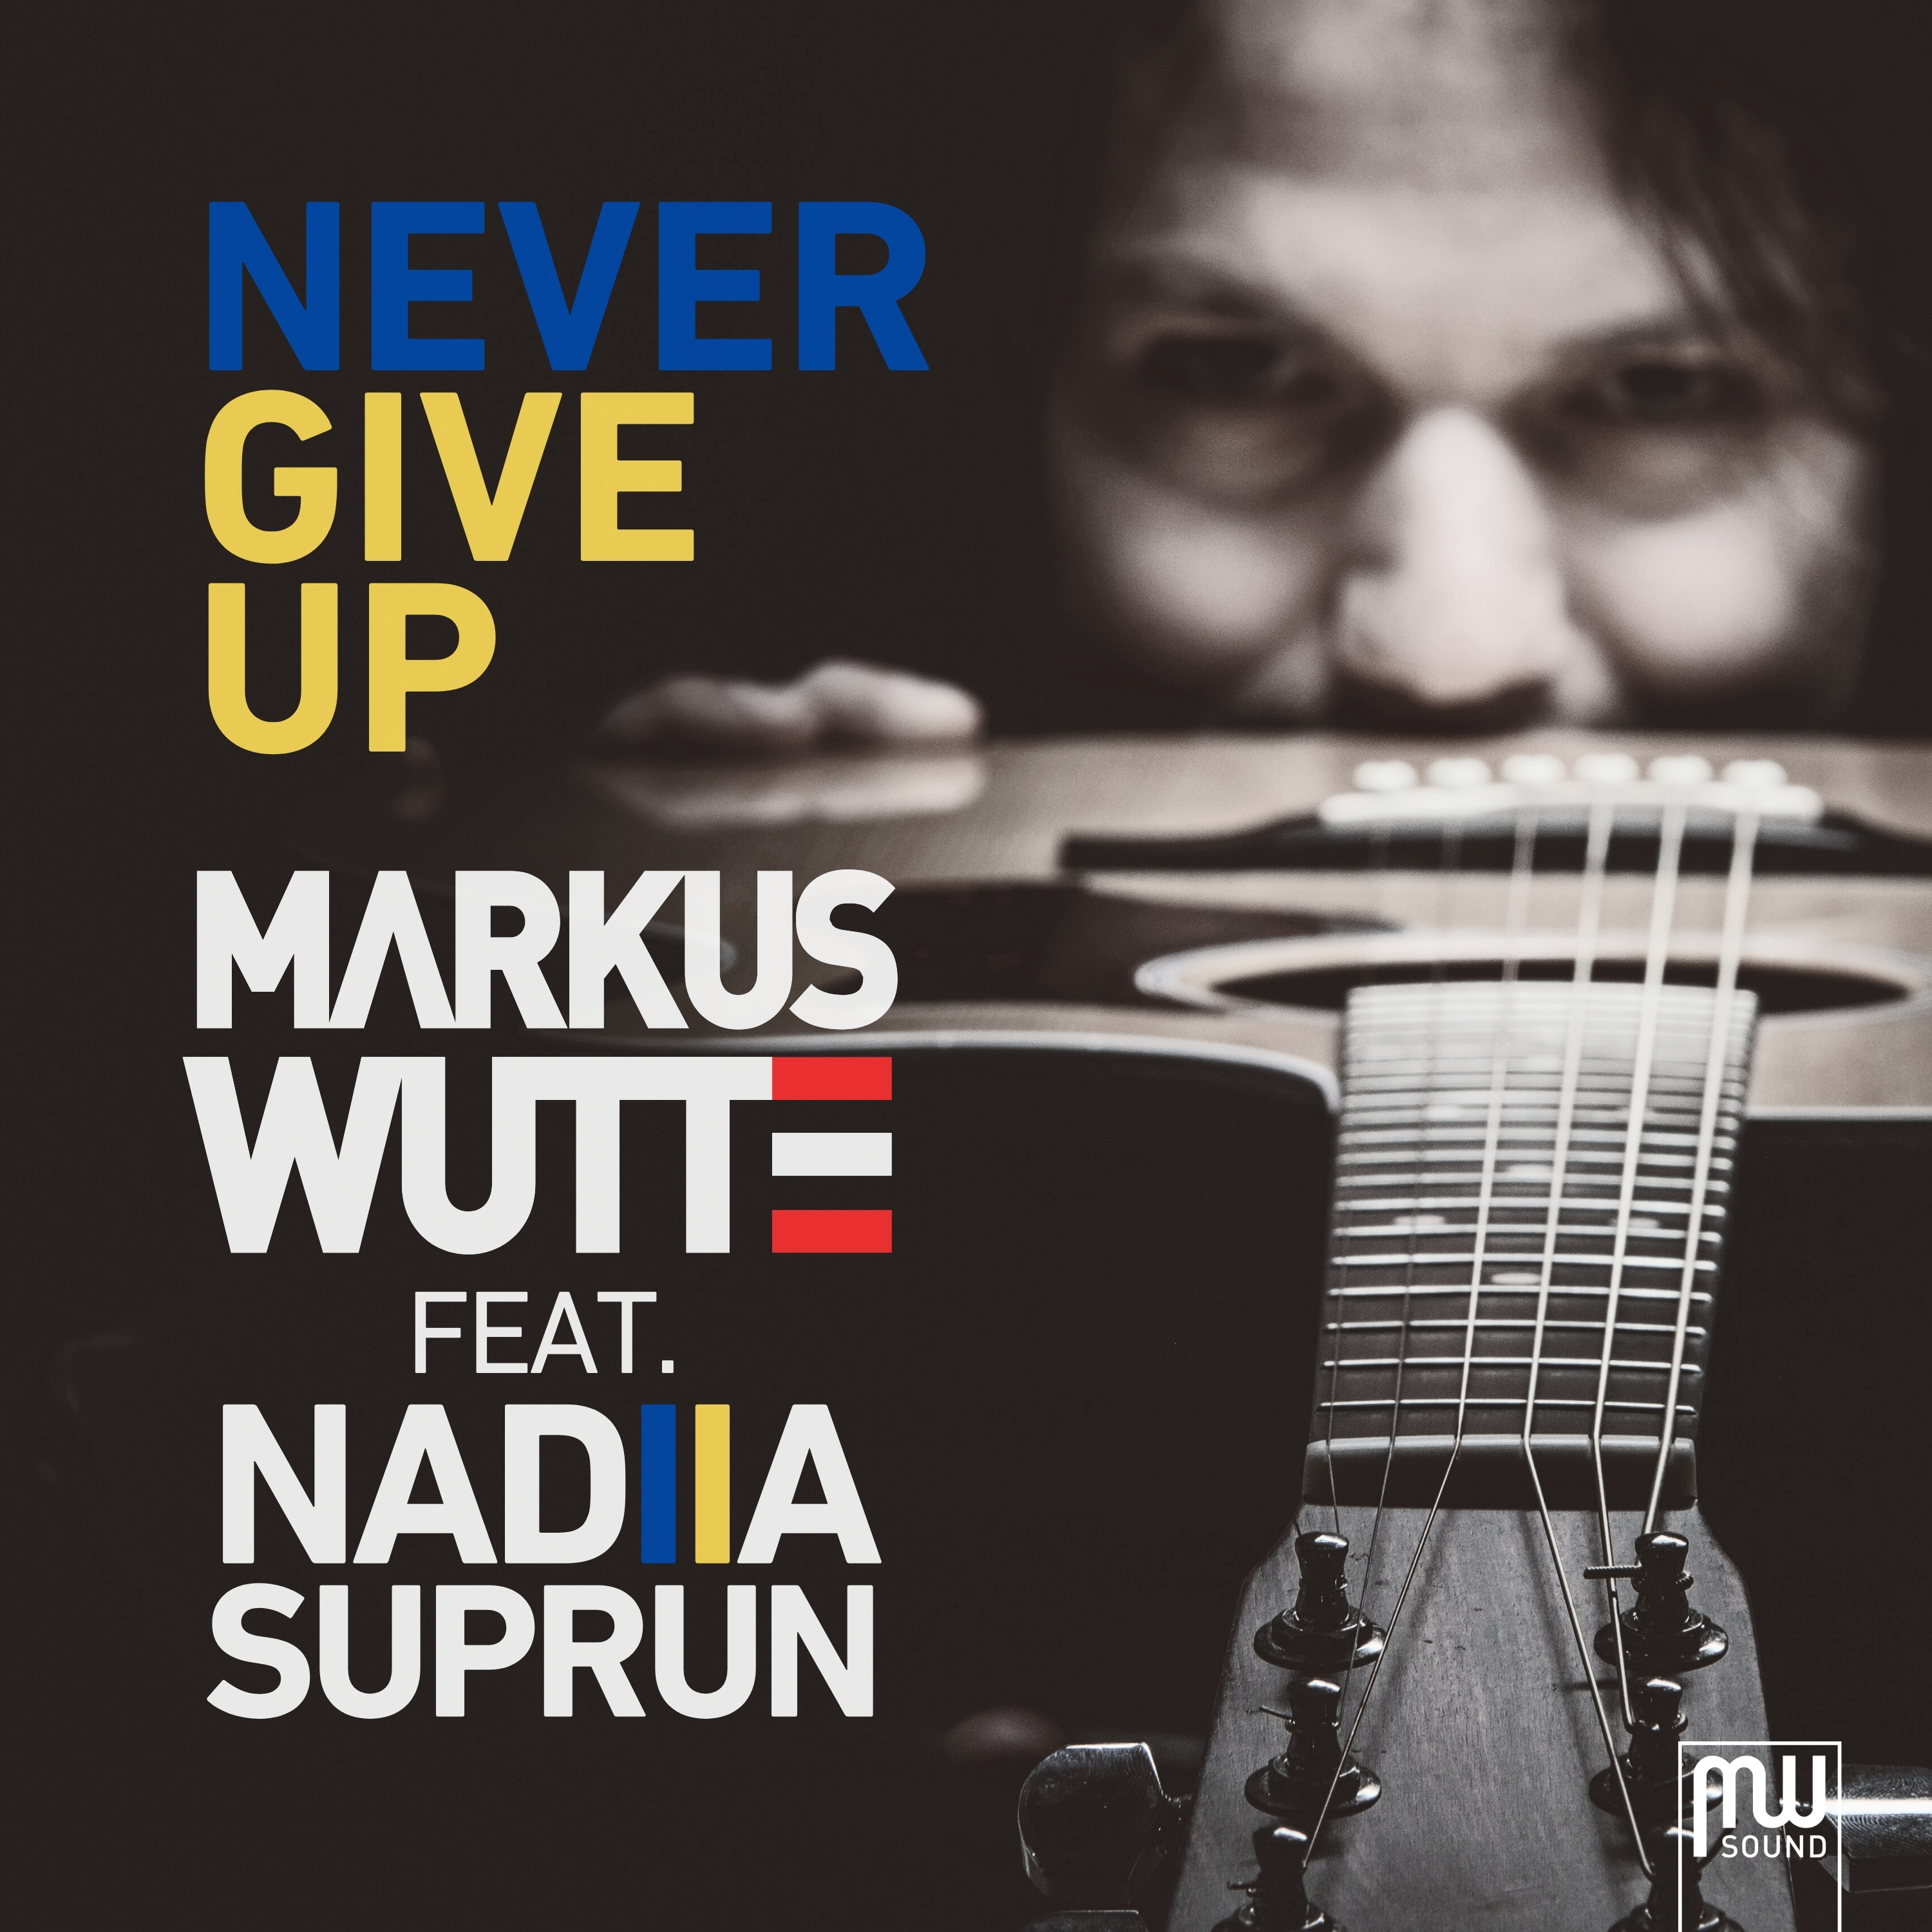 NEVER GIVE UP ist ein österreichisch-ukrainisches Song-Projekt von Markus Wutte und Nadiia Suprun.